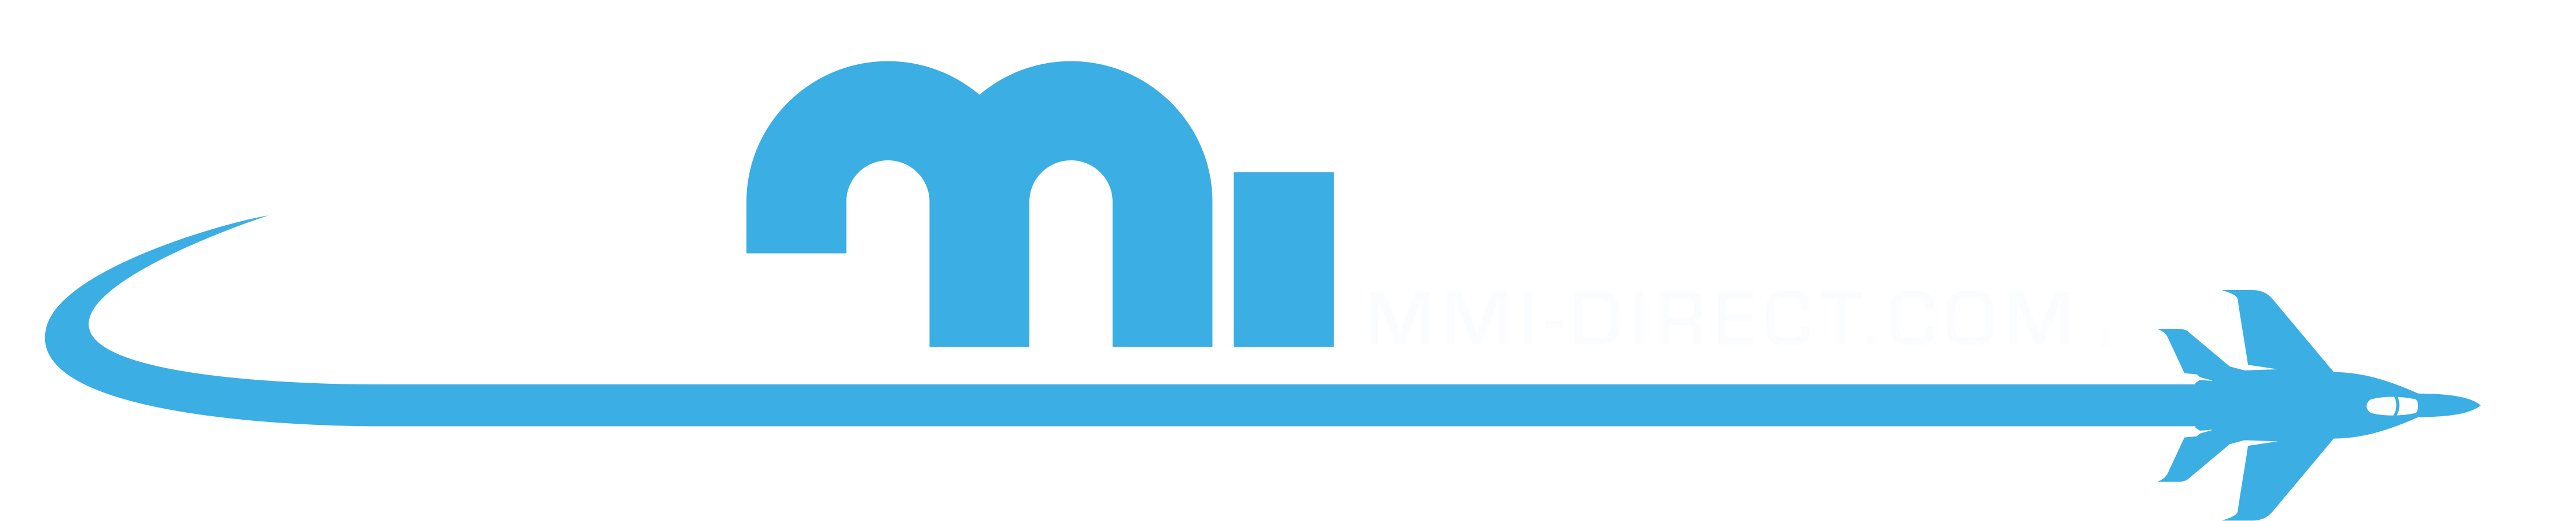 Mmi Aero Logo